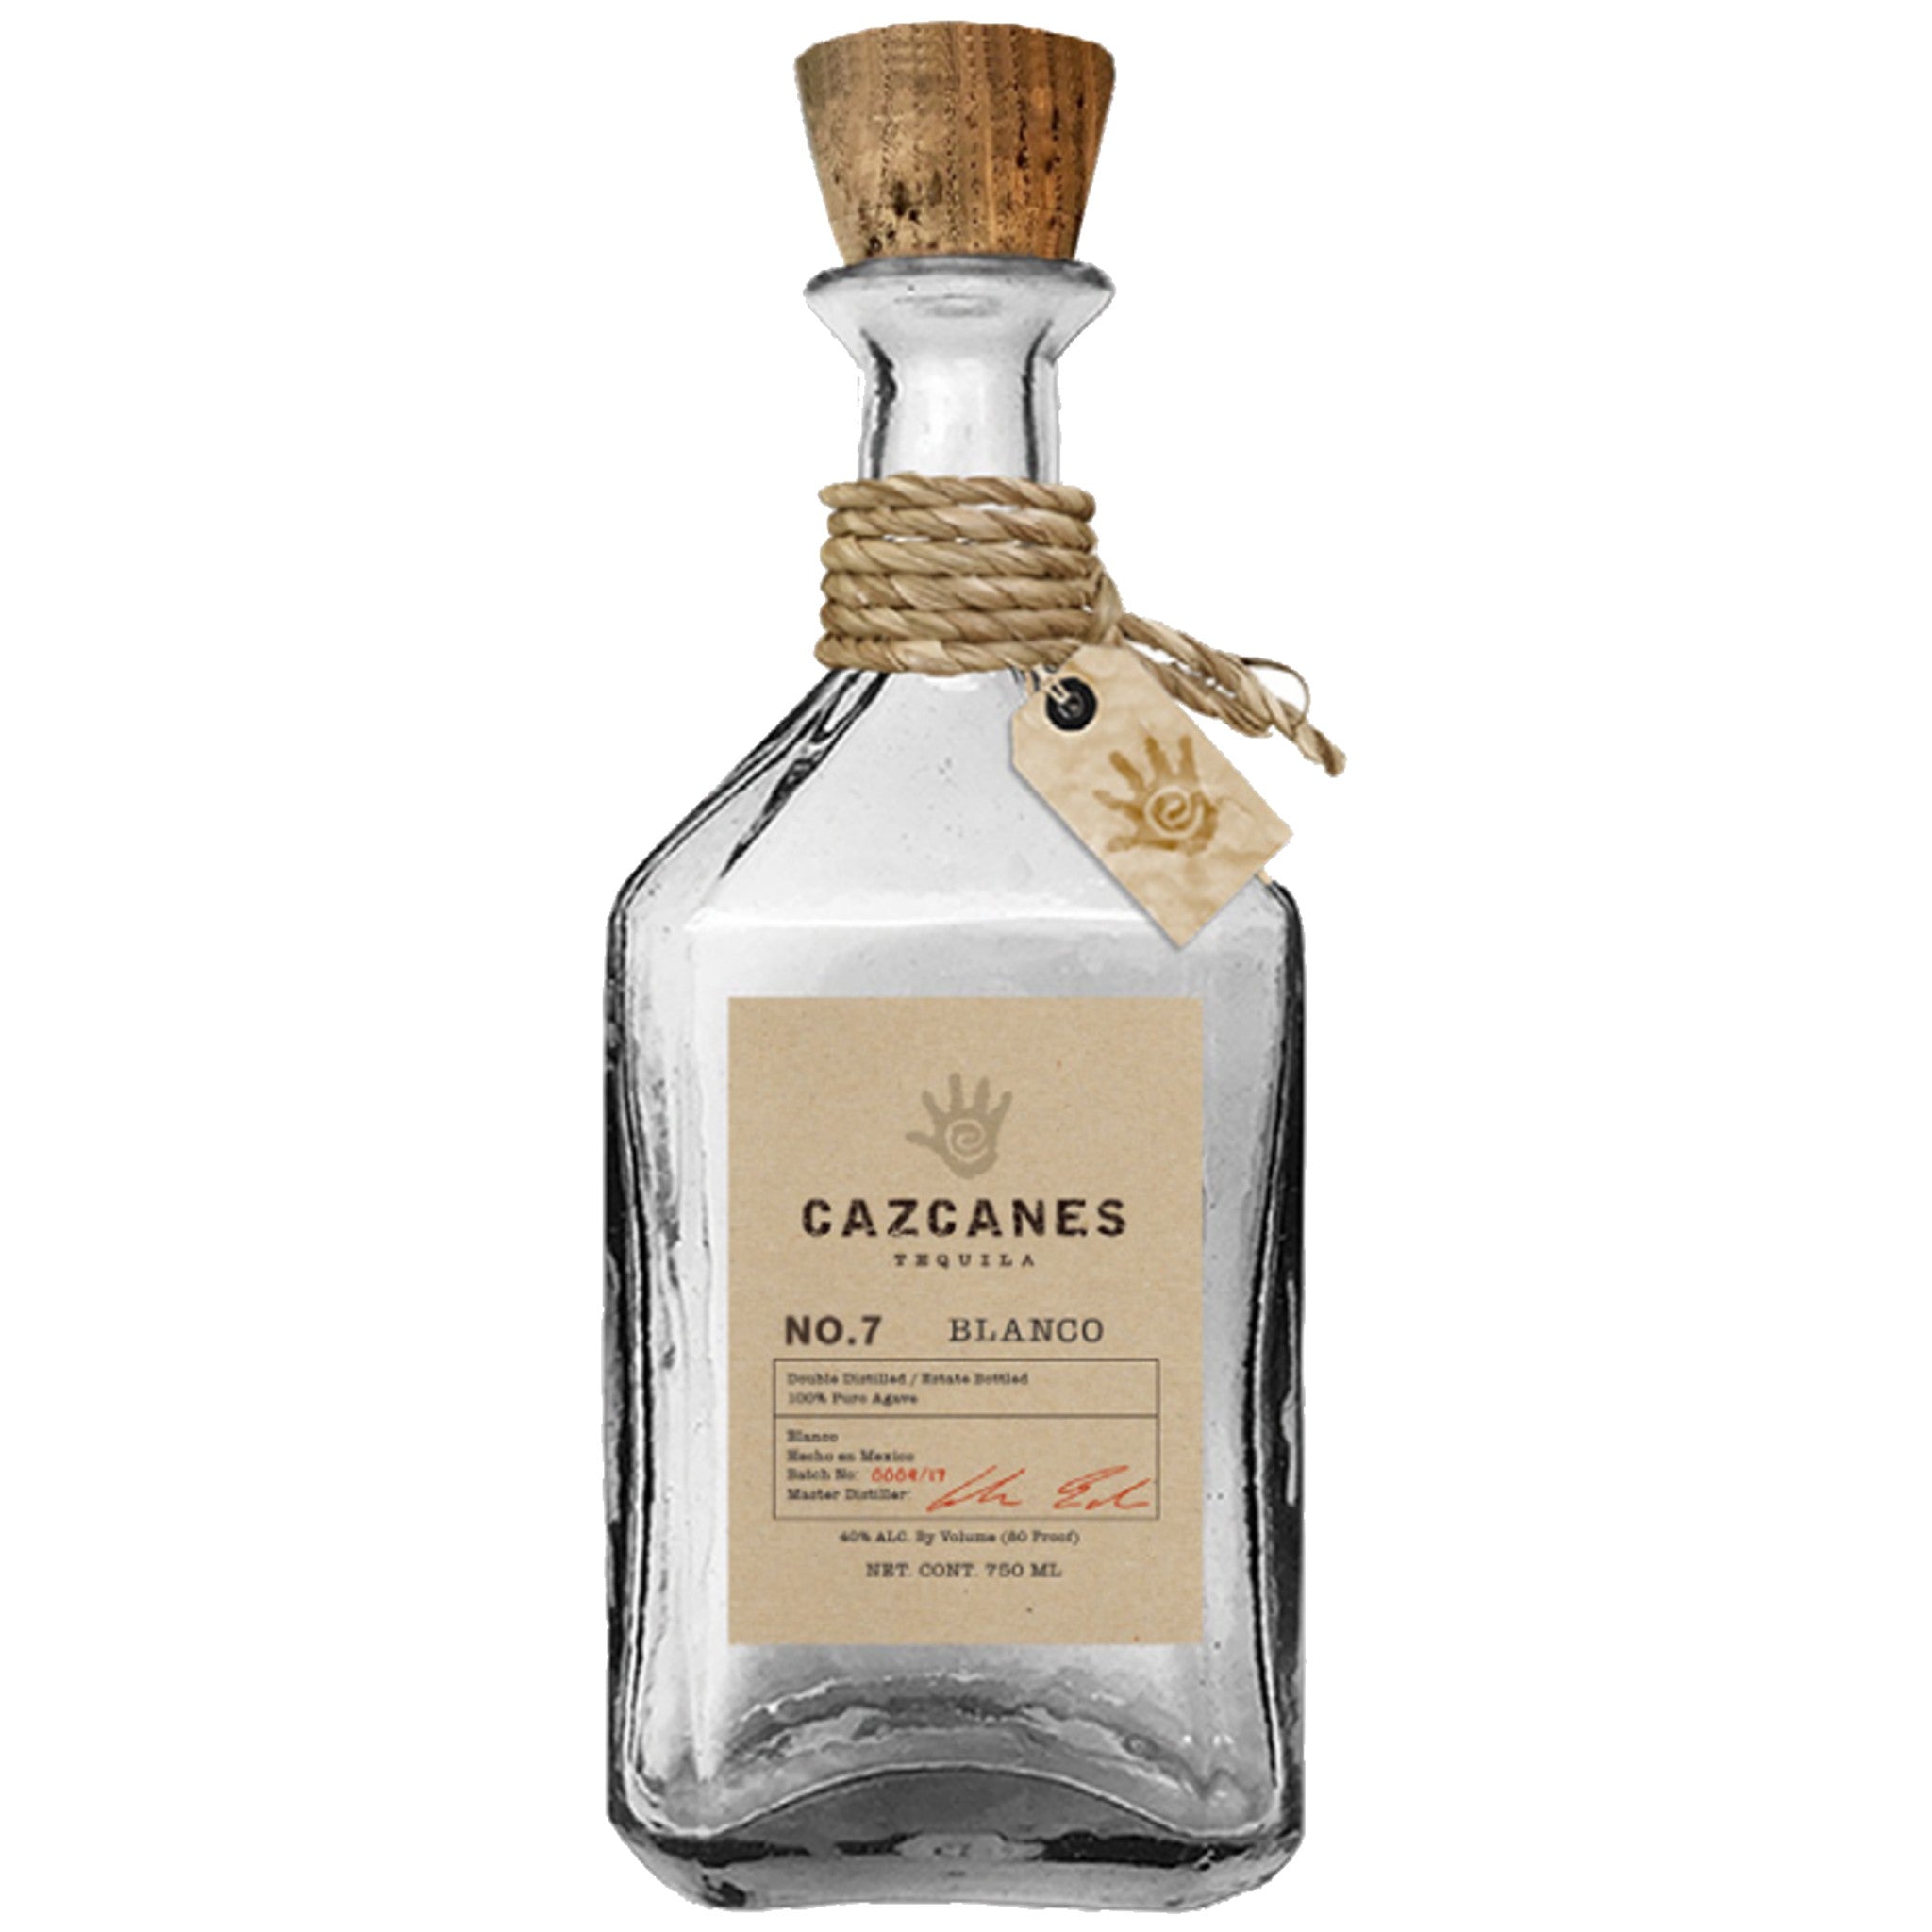 Cazcanes No. 7 Blanco Tequila (750ml)